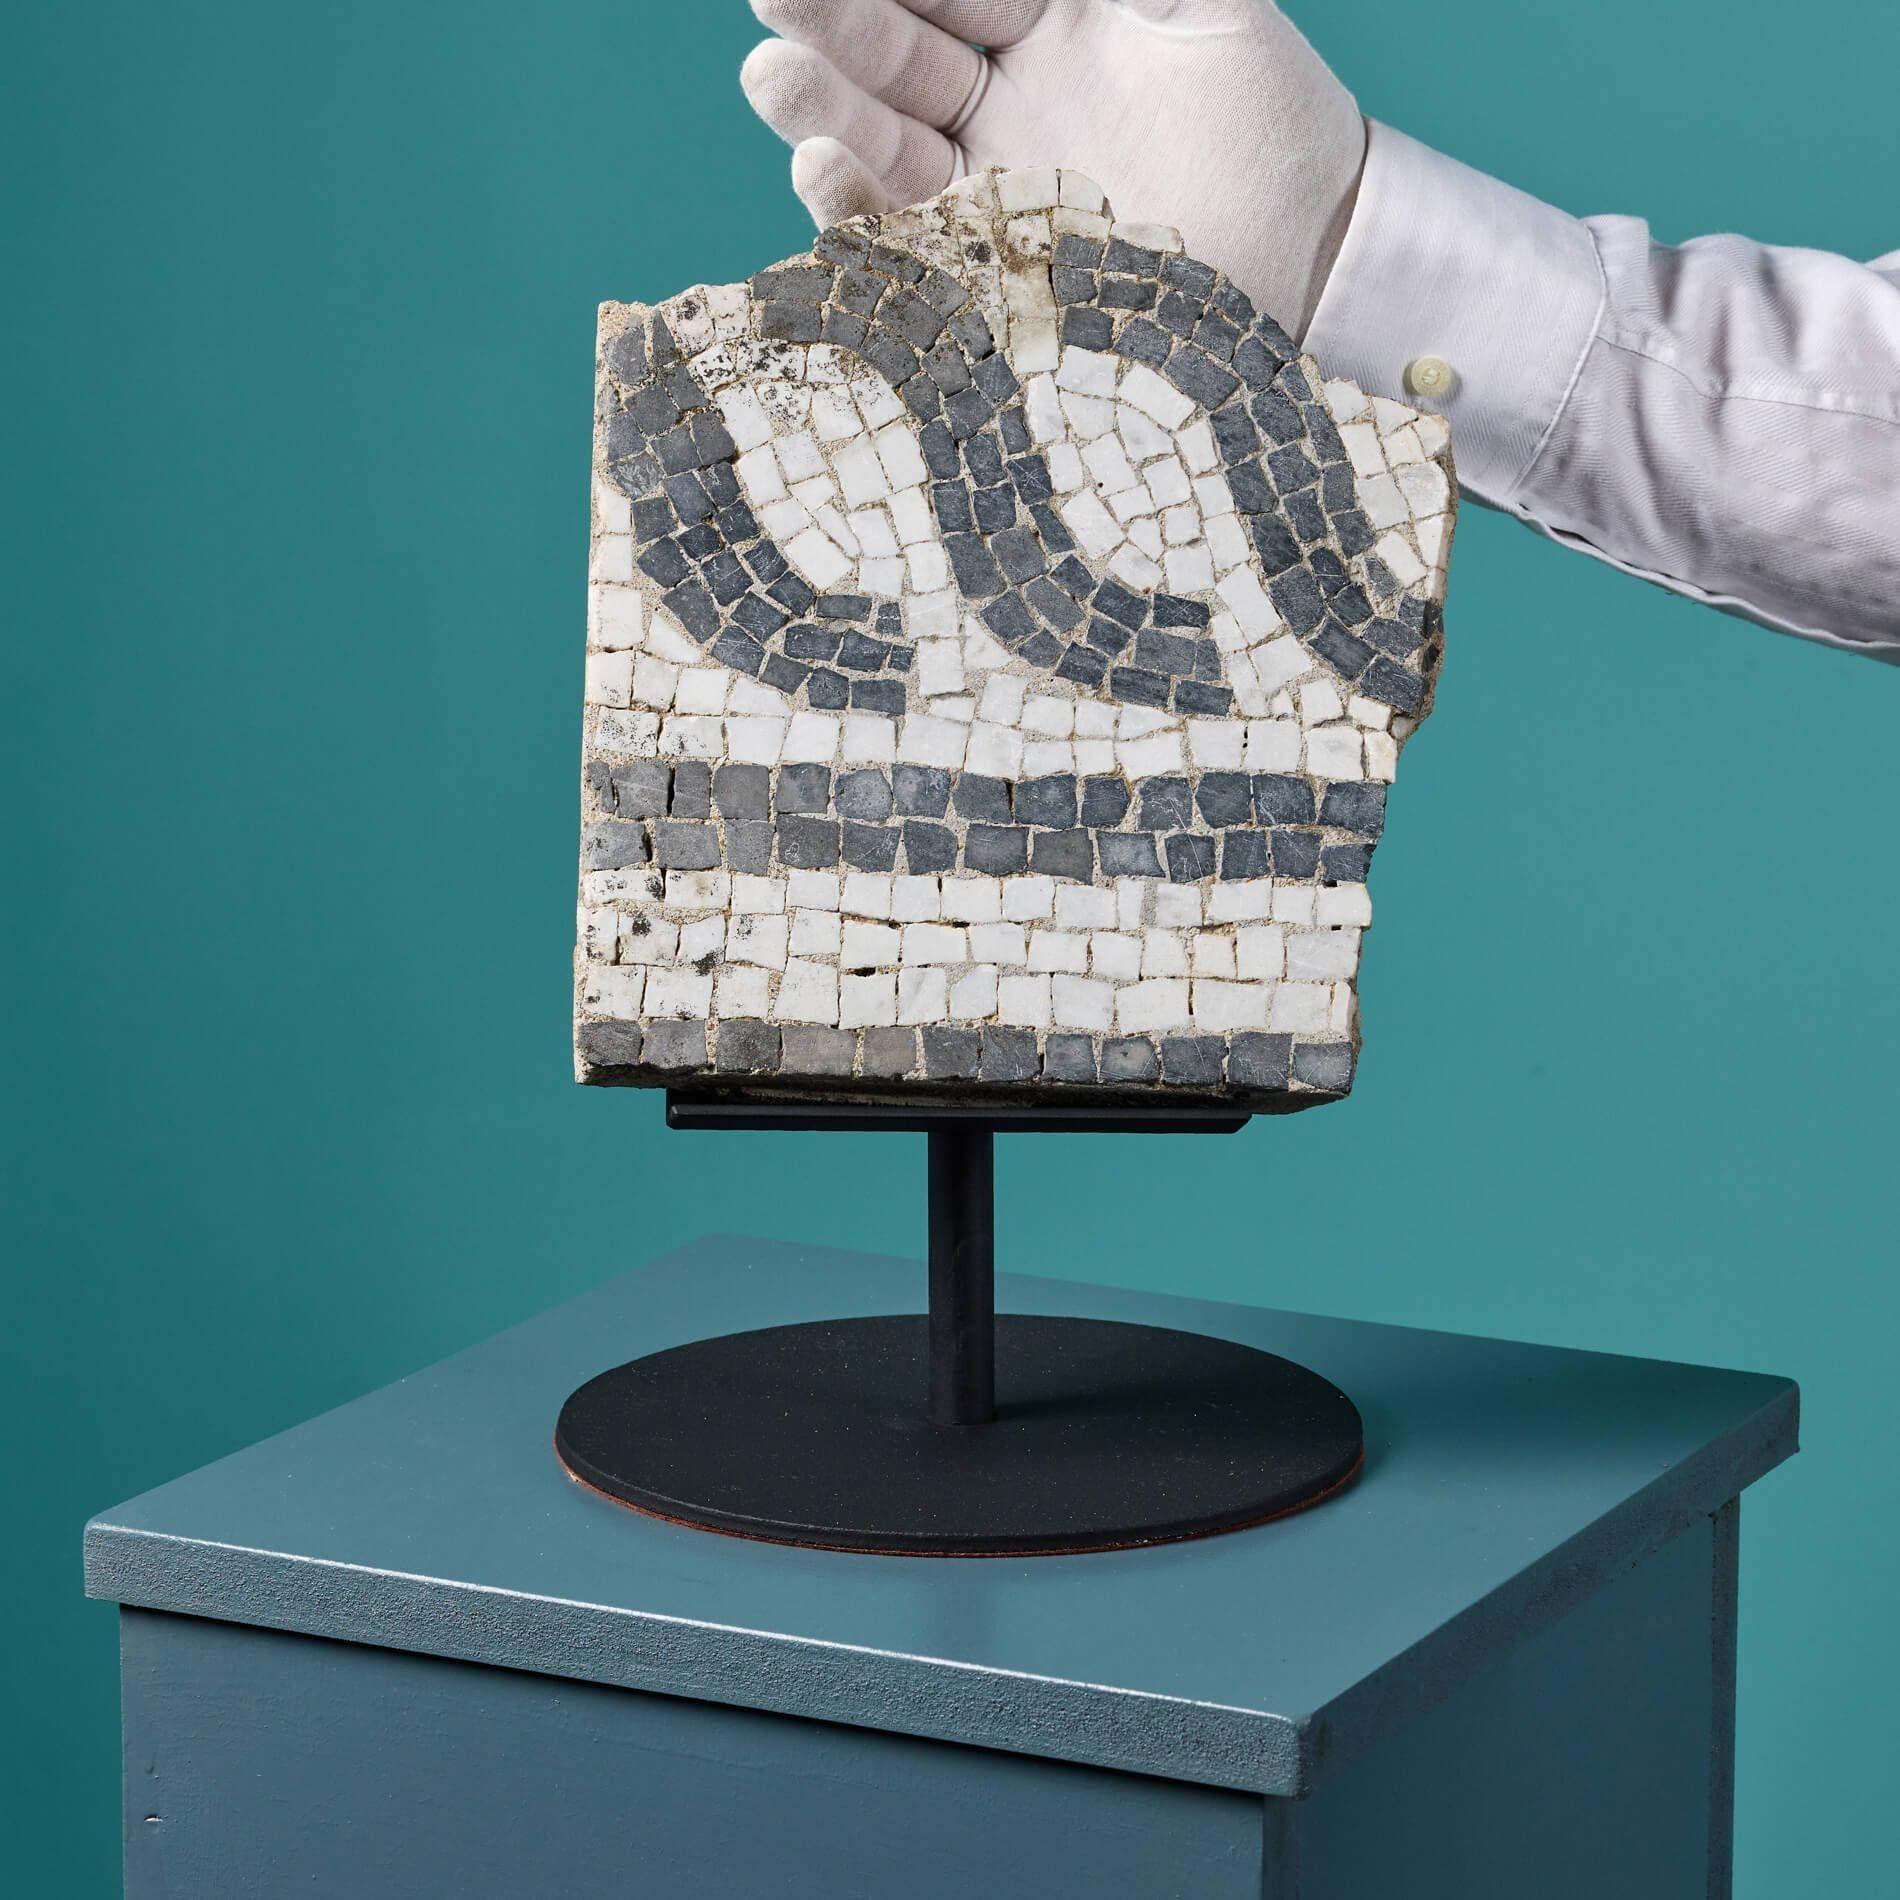 Dieses Mosaik im römischen Stil auf einem Ständer ist ein Fragment der Geschichte. Sie enthält komplizierte Mosaikarbeiten aus kontrastierendem farbigem Marmor, die ihr das Aussehen einer antiken römischen Villa oder eines Badehauses verleihen. Er